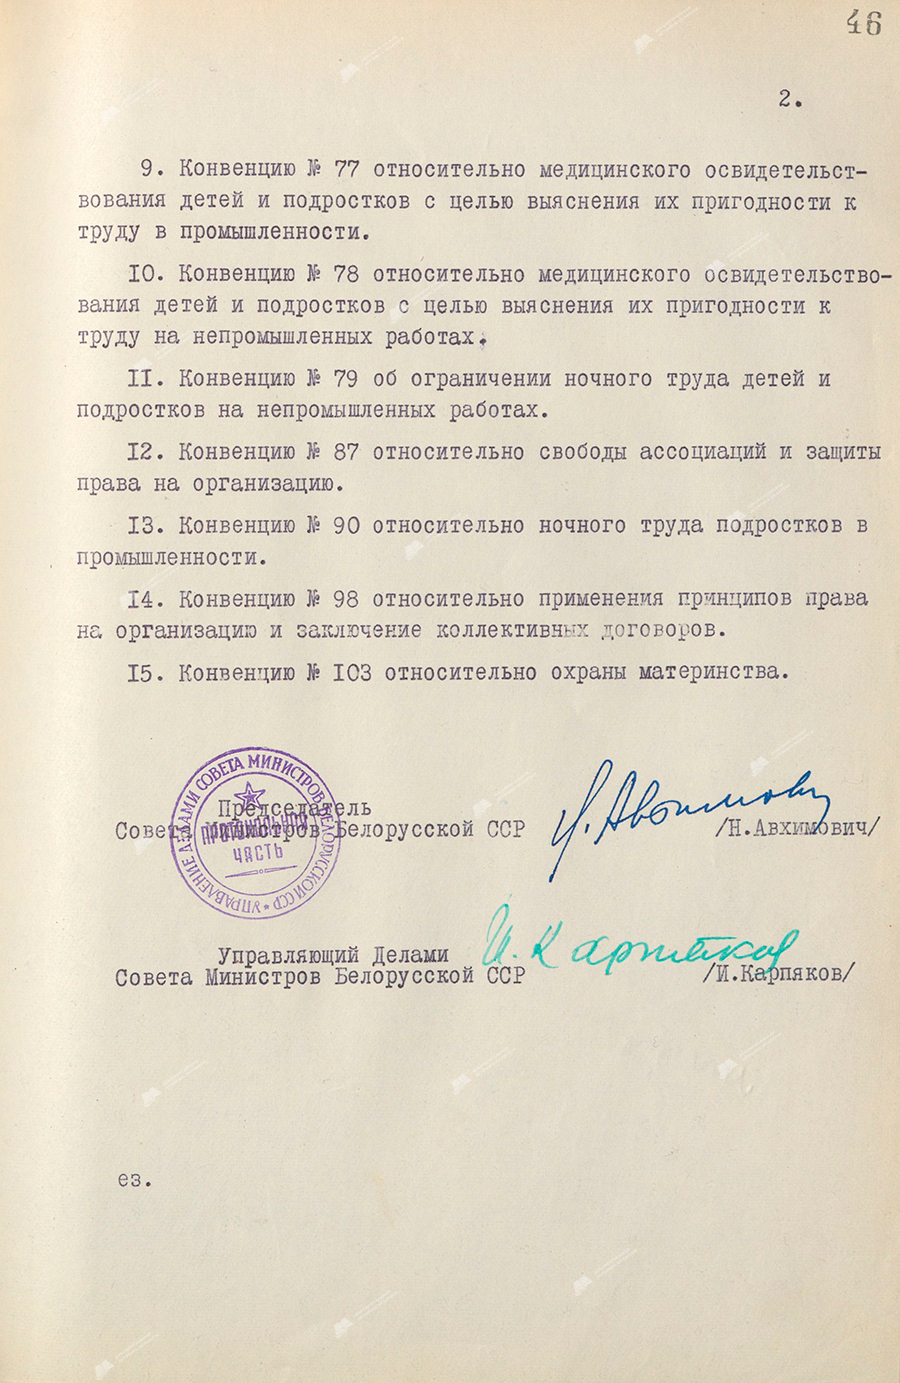 Beschluss Nr. 433 des Ministerrats der Weißrussischen SSR «Über die Genehmigung der Übereinkommen der Internationalen Arbeitsorganisation (ILO)»-с. 1